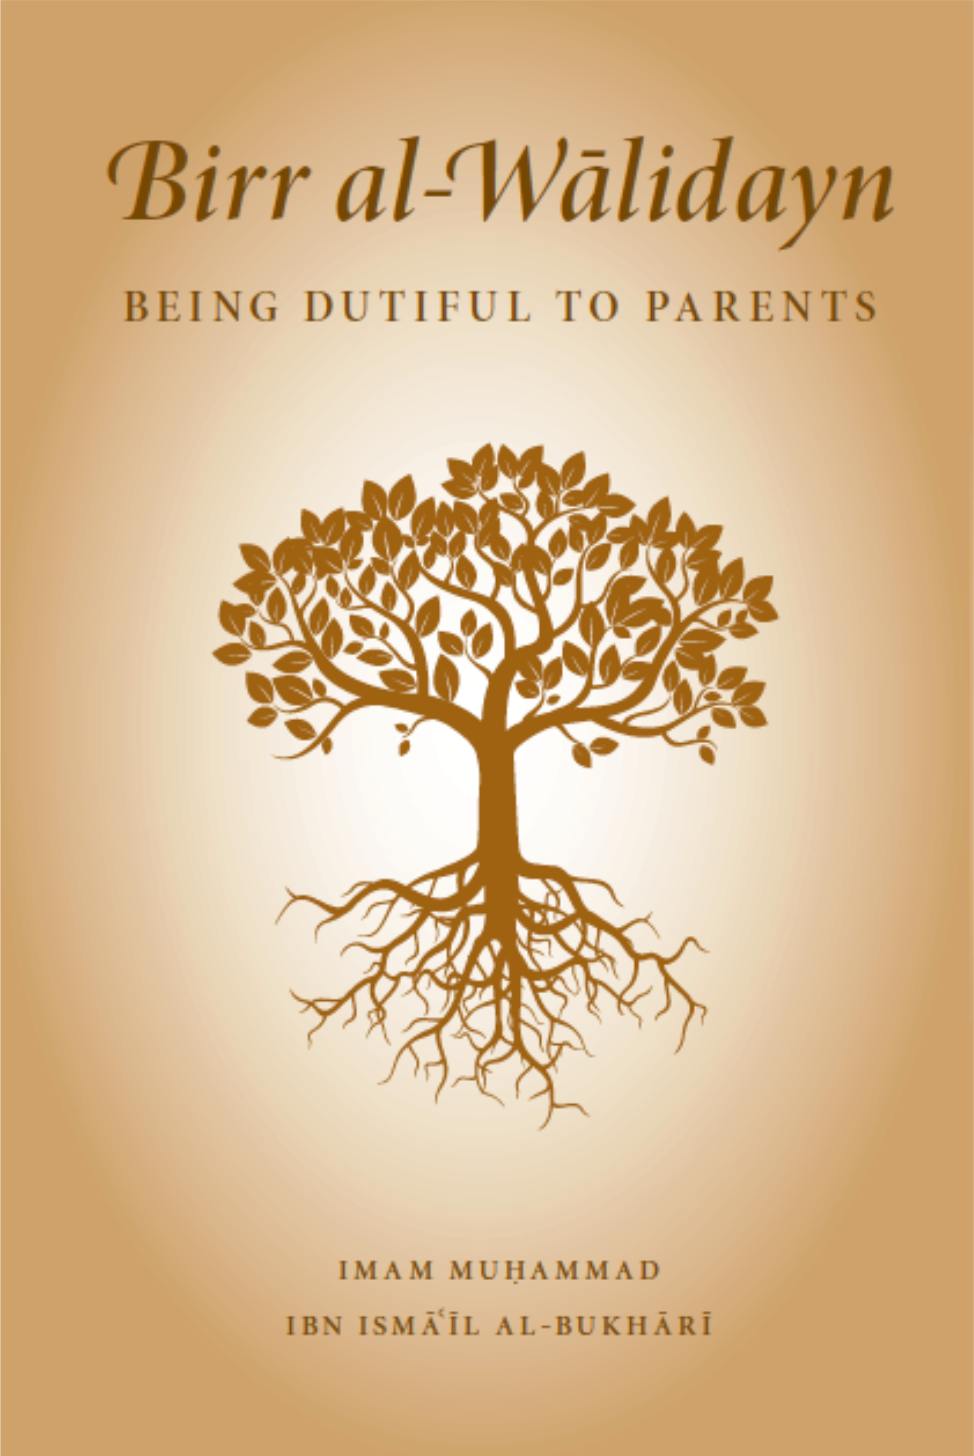 Being Dutiful to Parents- Birr al-Walidayn